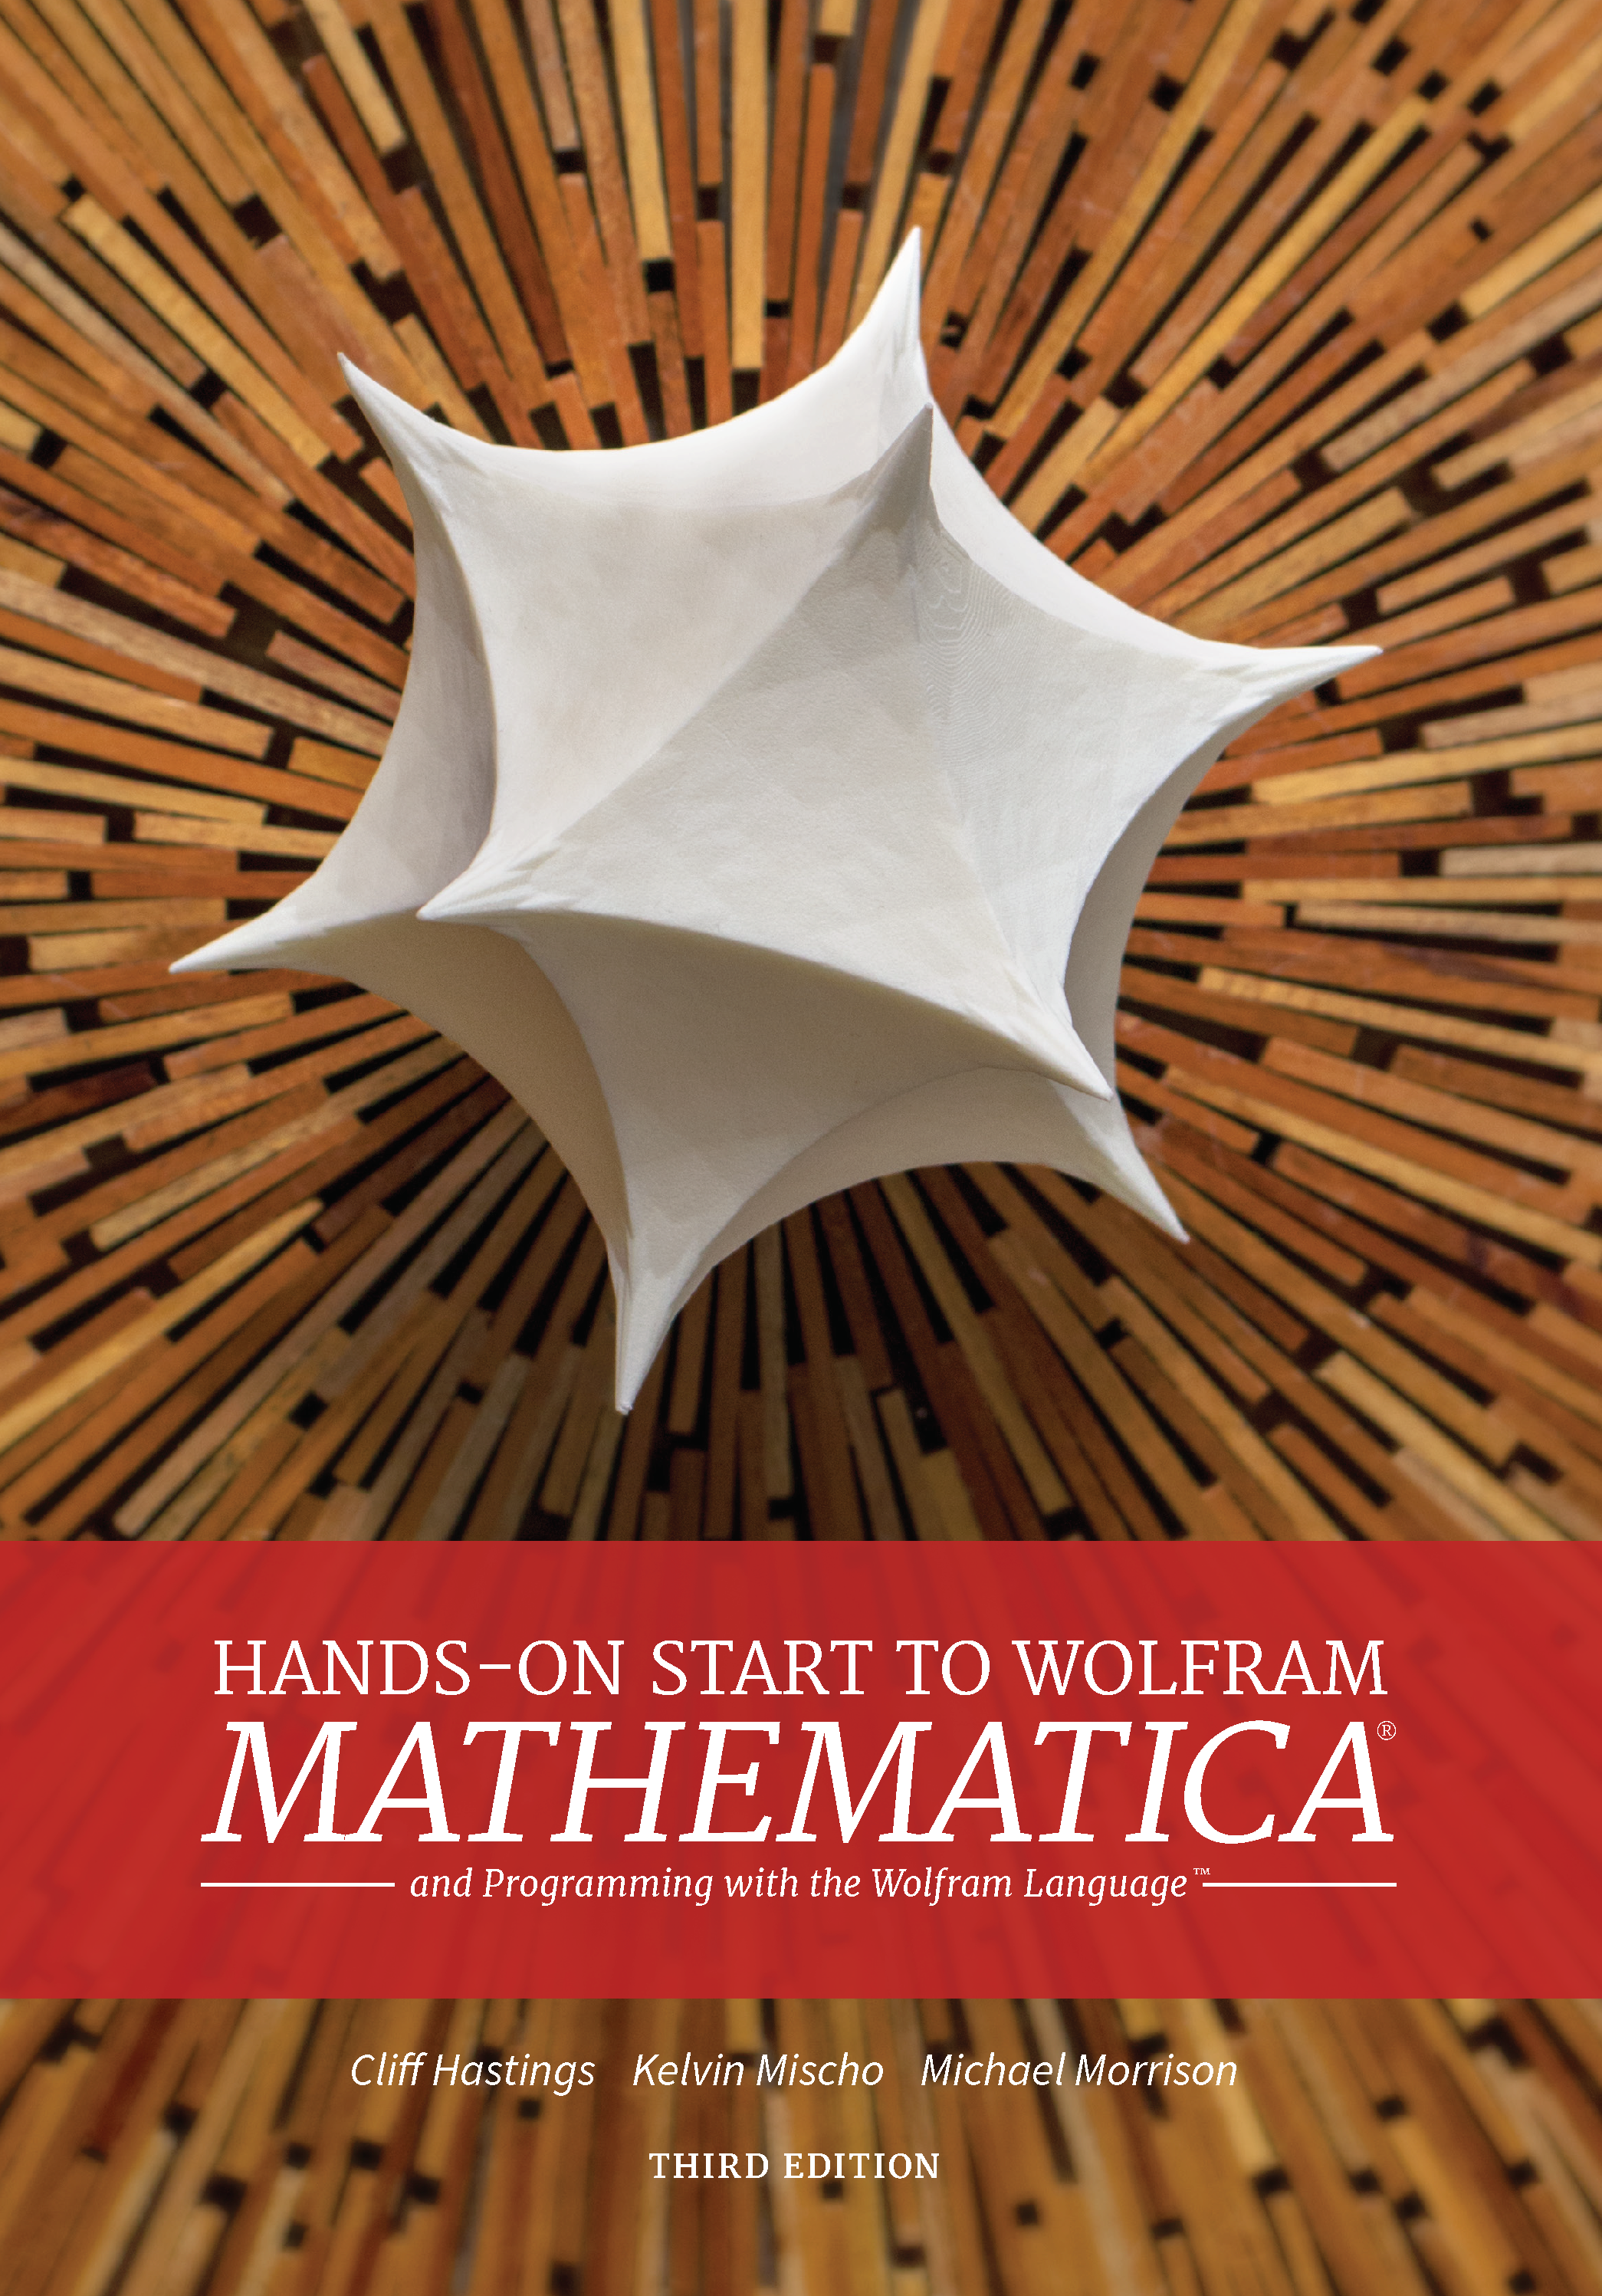 wolfram mathematica download 10.3.1